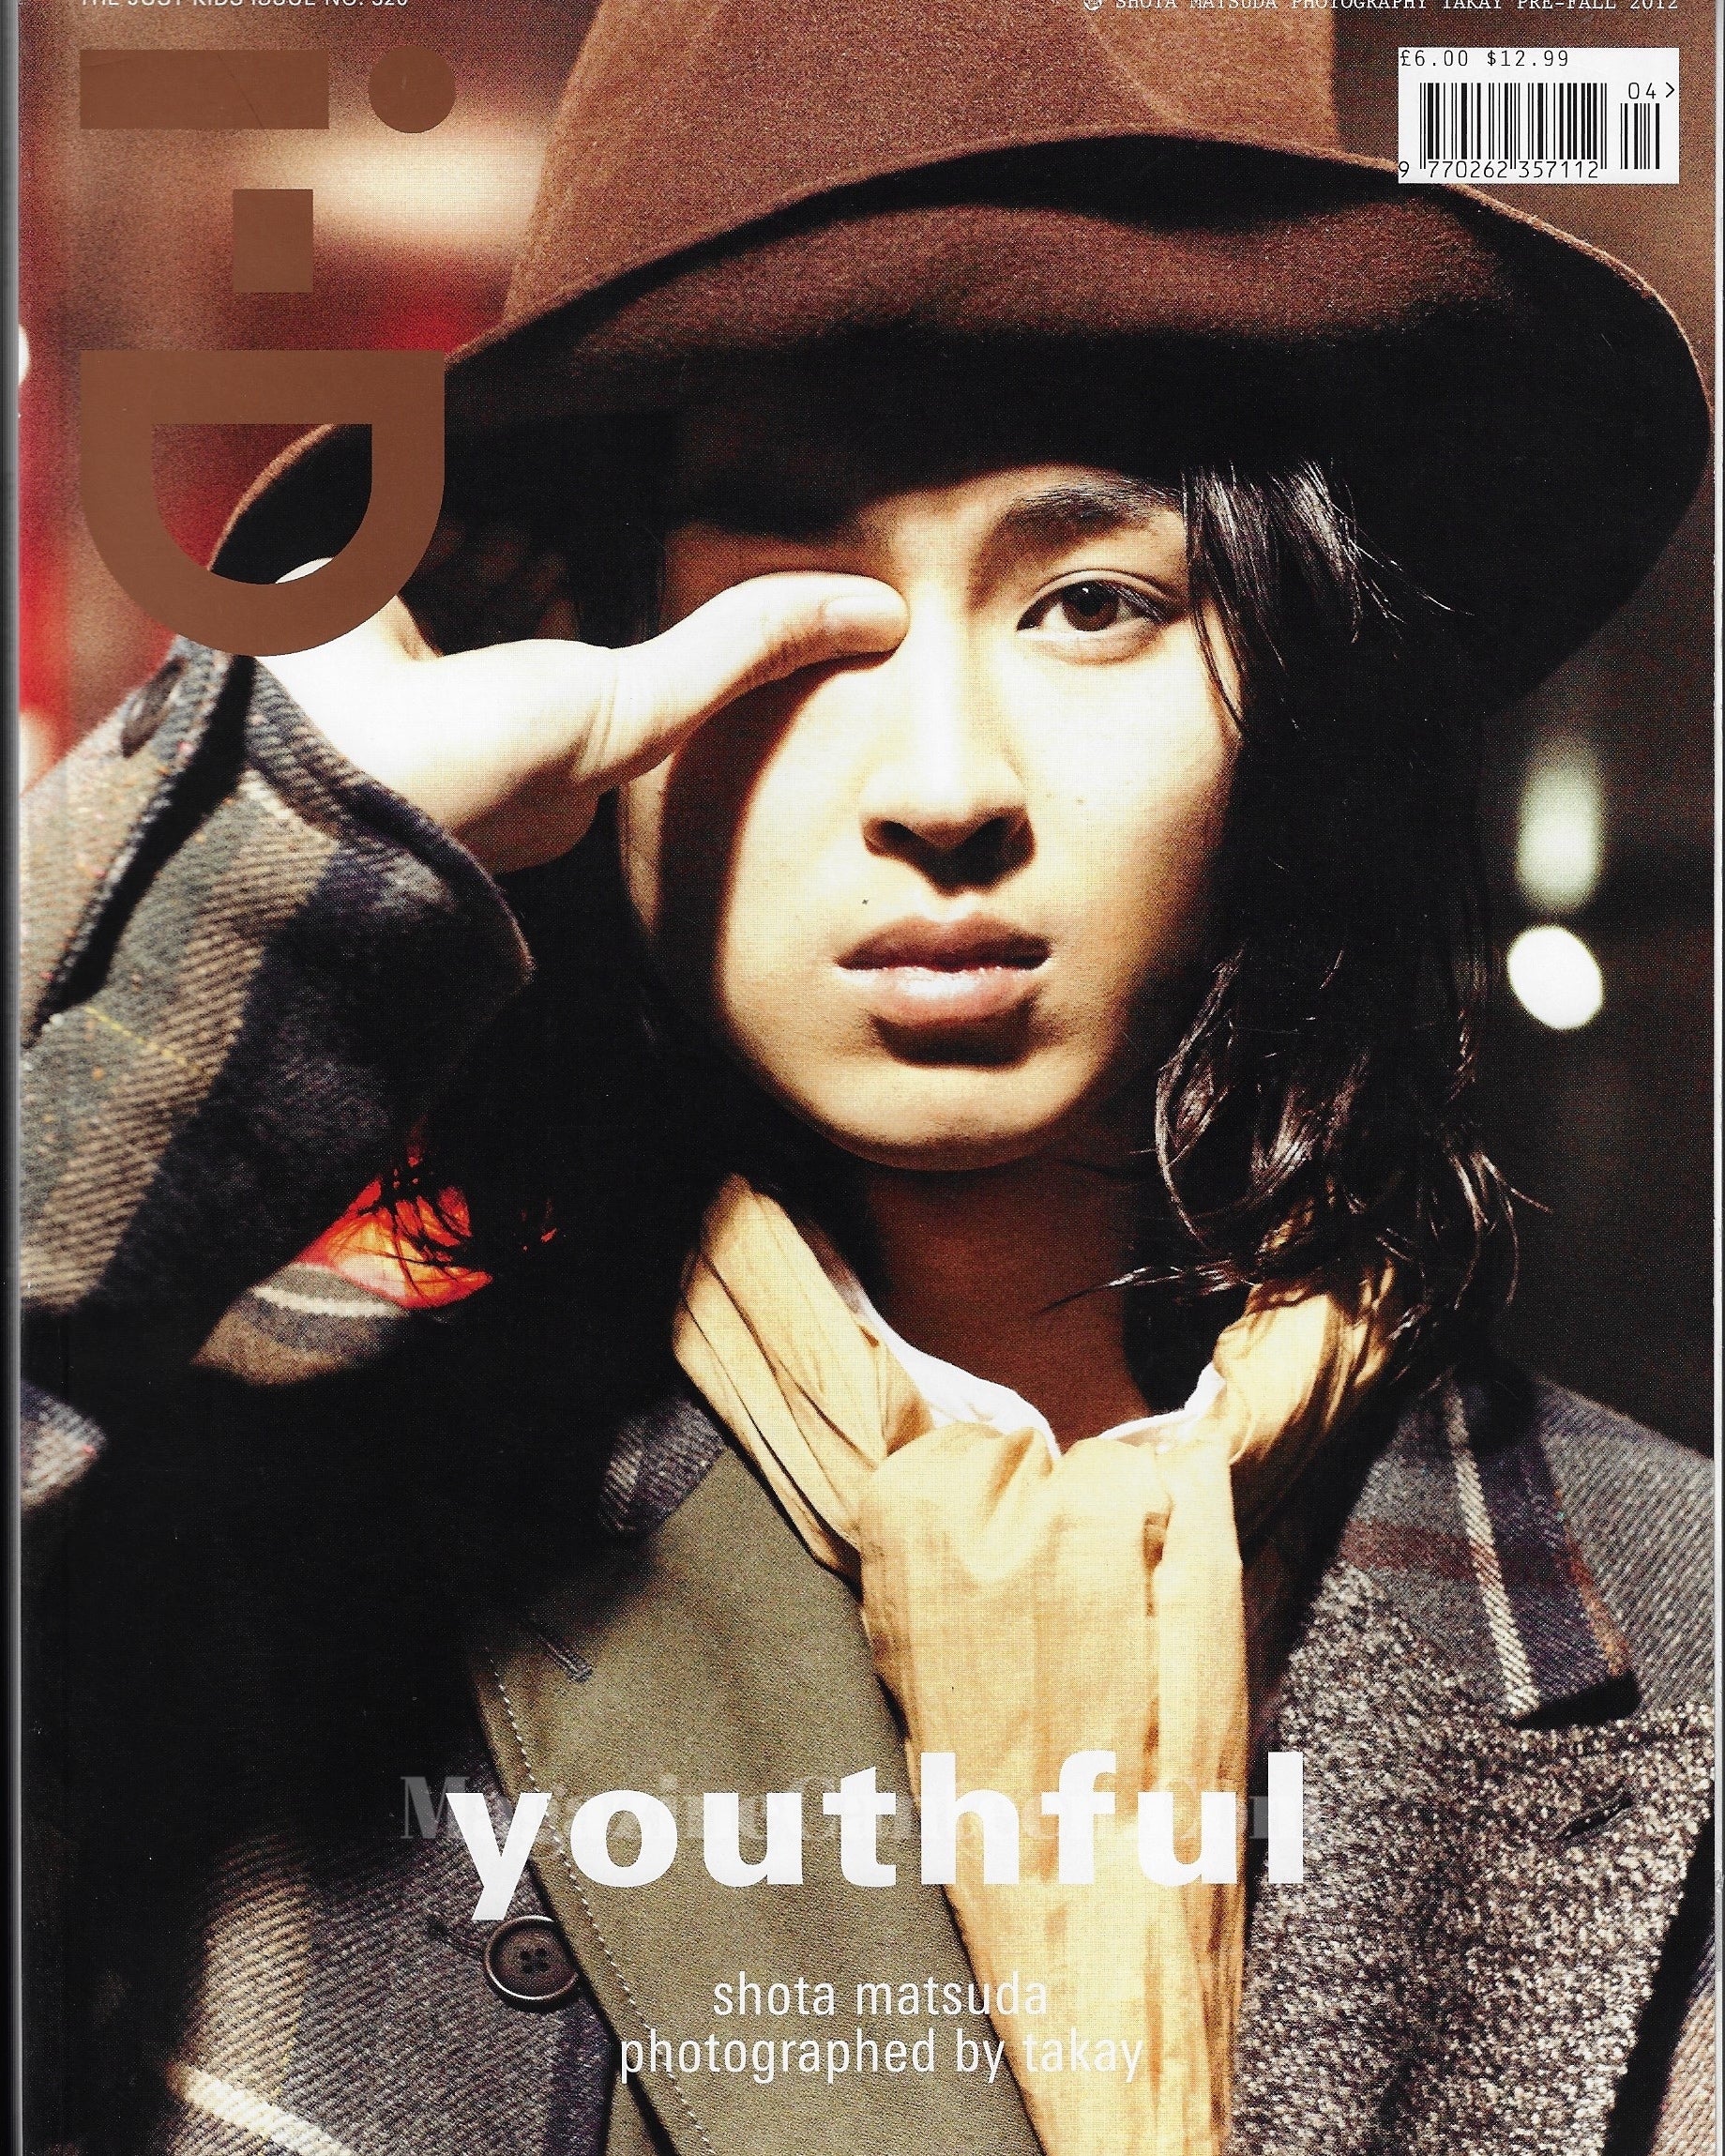 I-D Magazine 320 - Shotu Matsuda Takay 2012